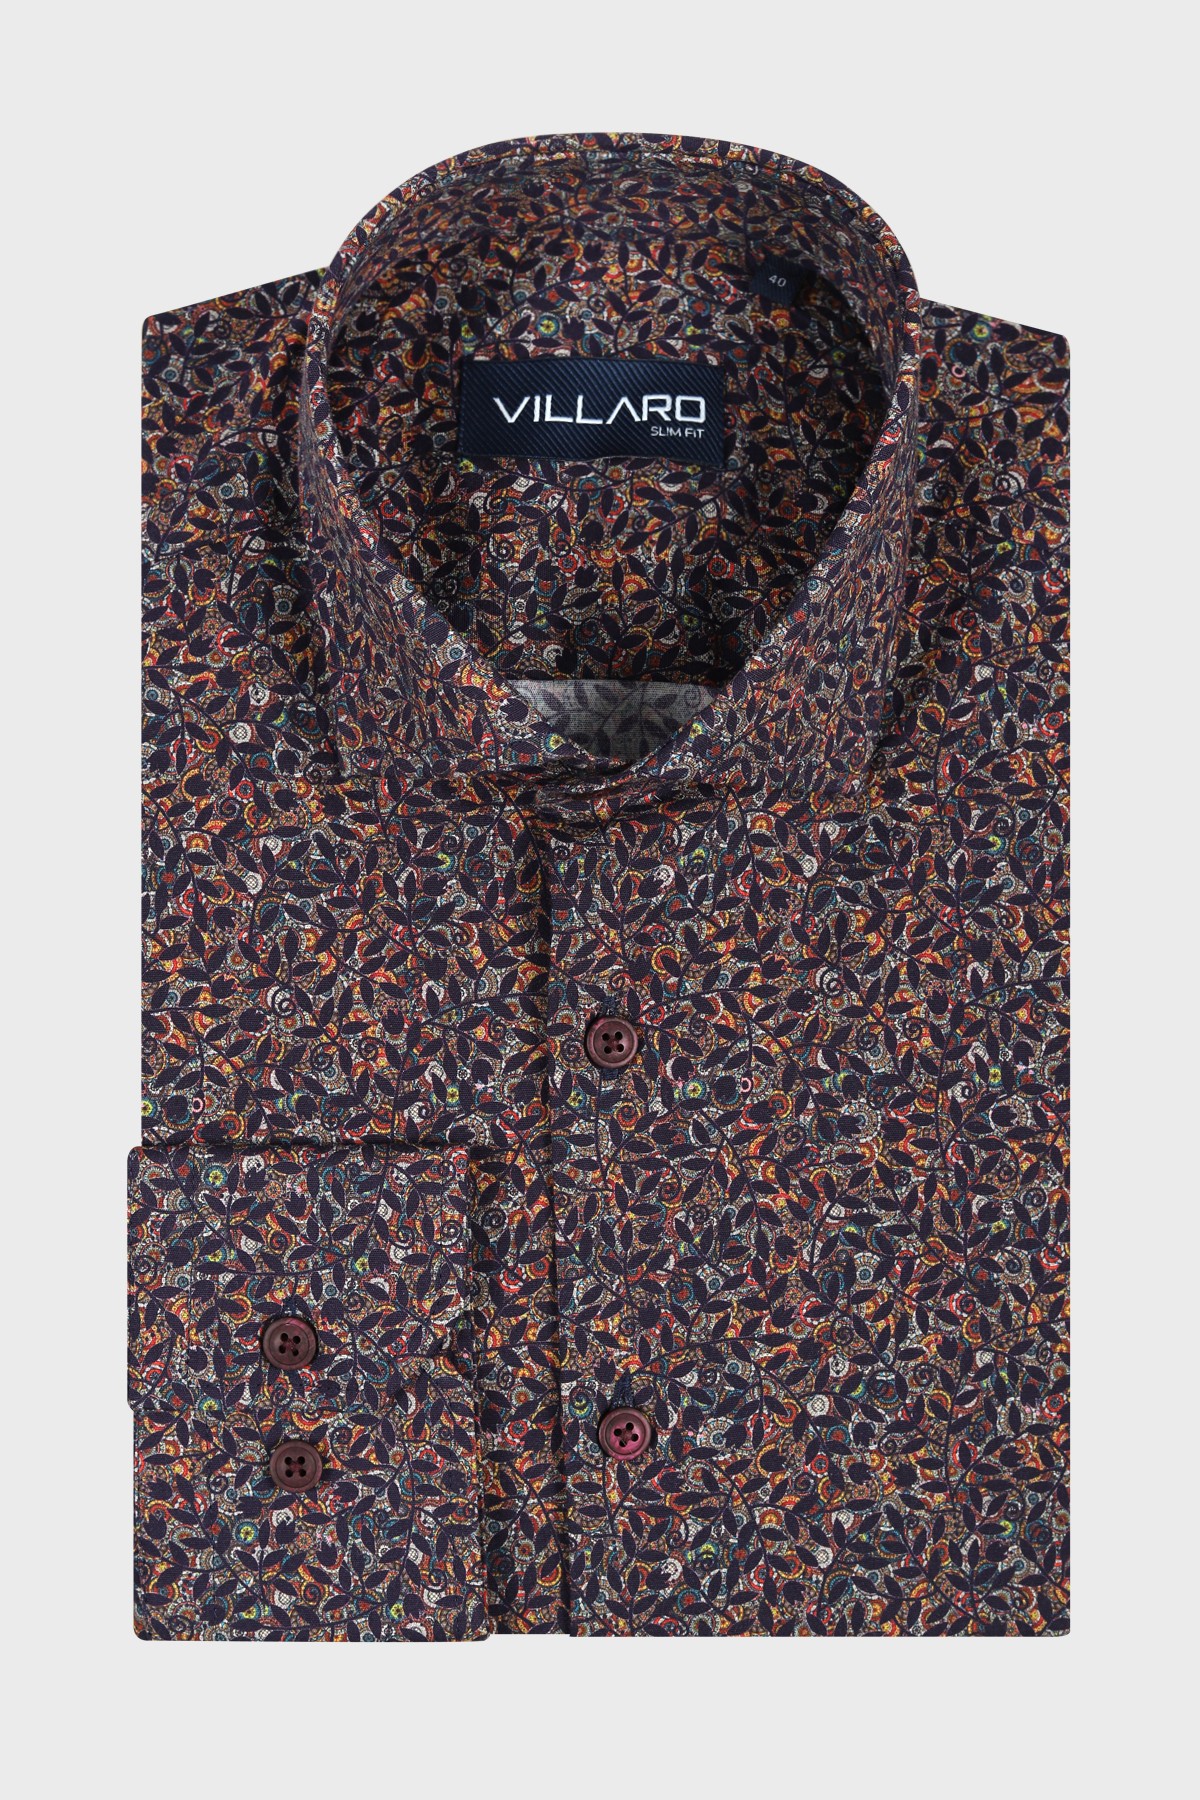 Pánská košile dlouhý rukáv VILLARO by MMER H105DSL Slim Fit vzorovaná Velikost: 40